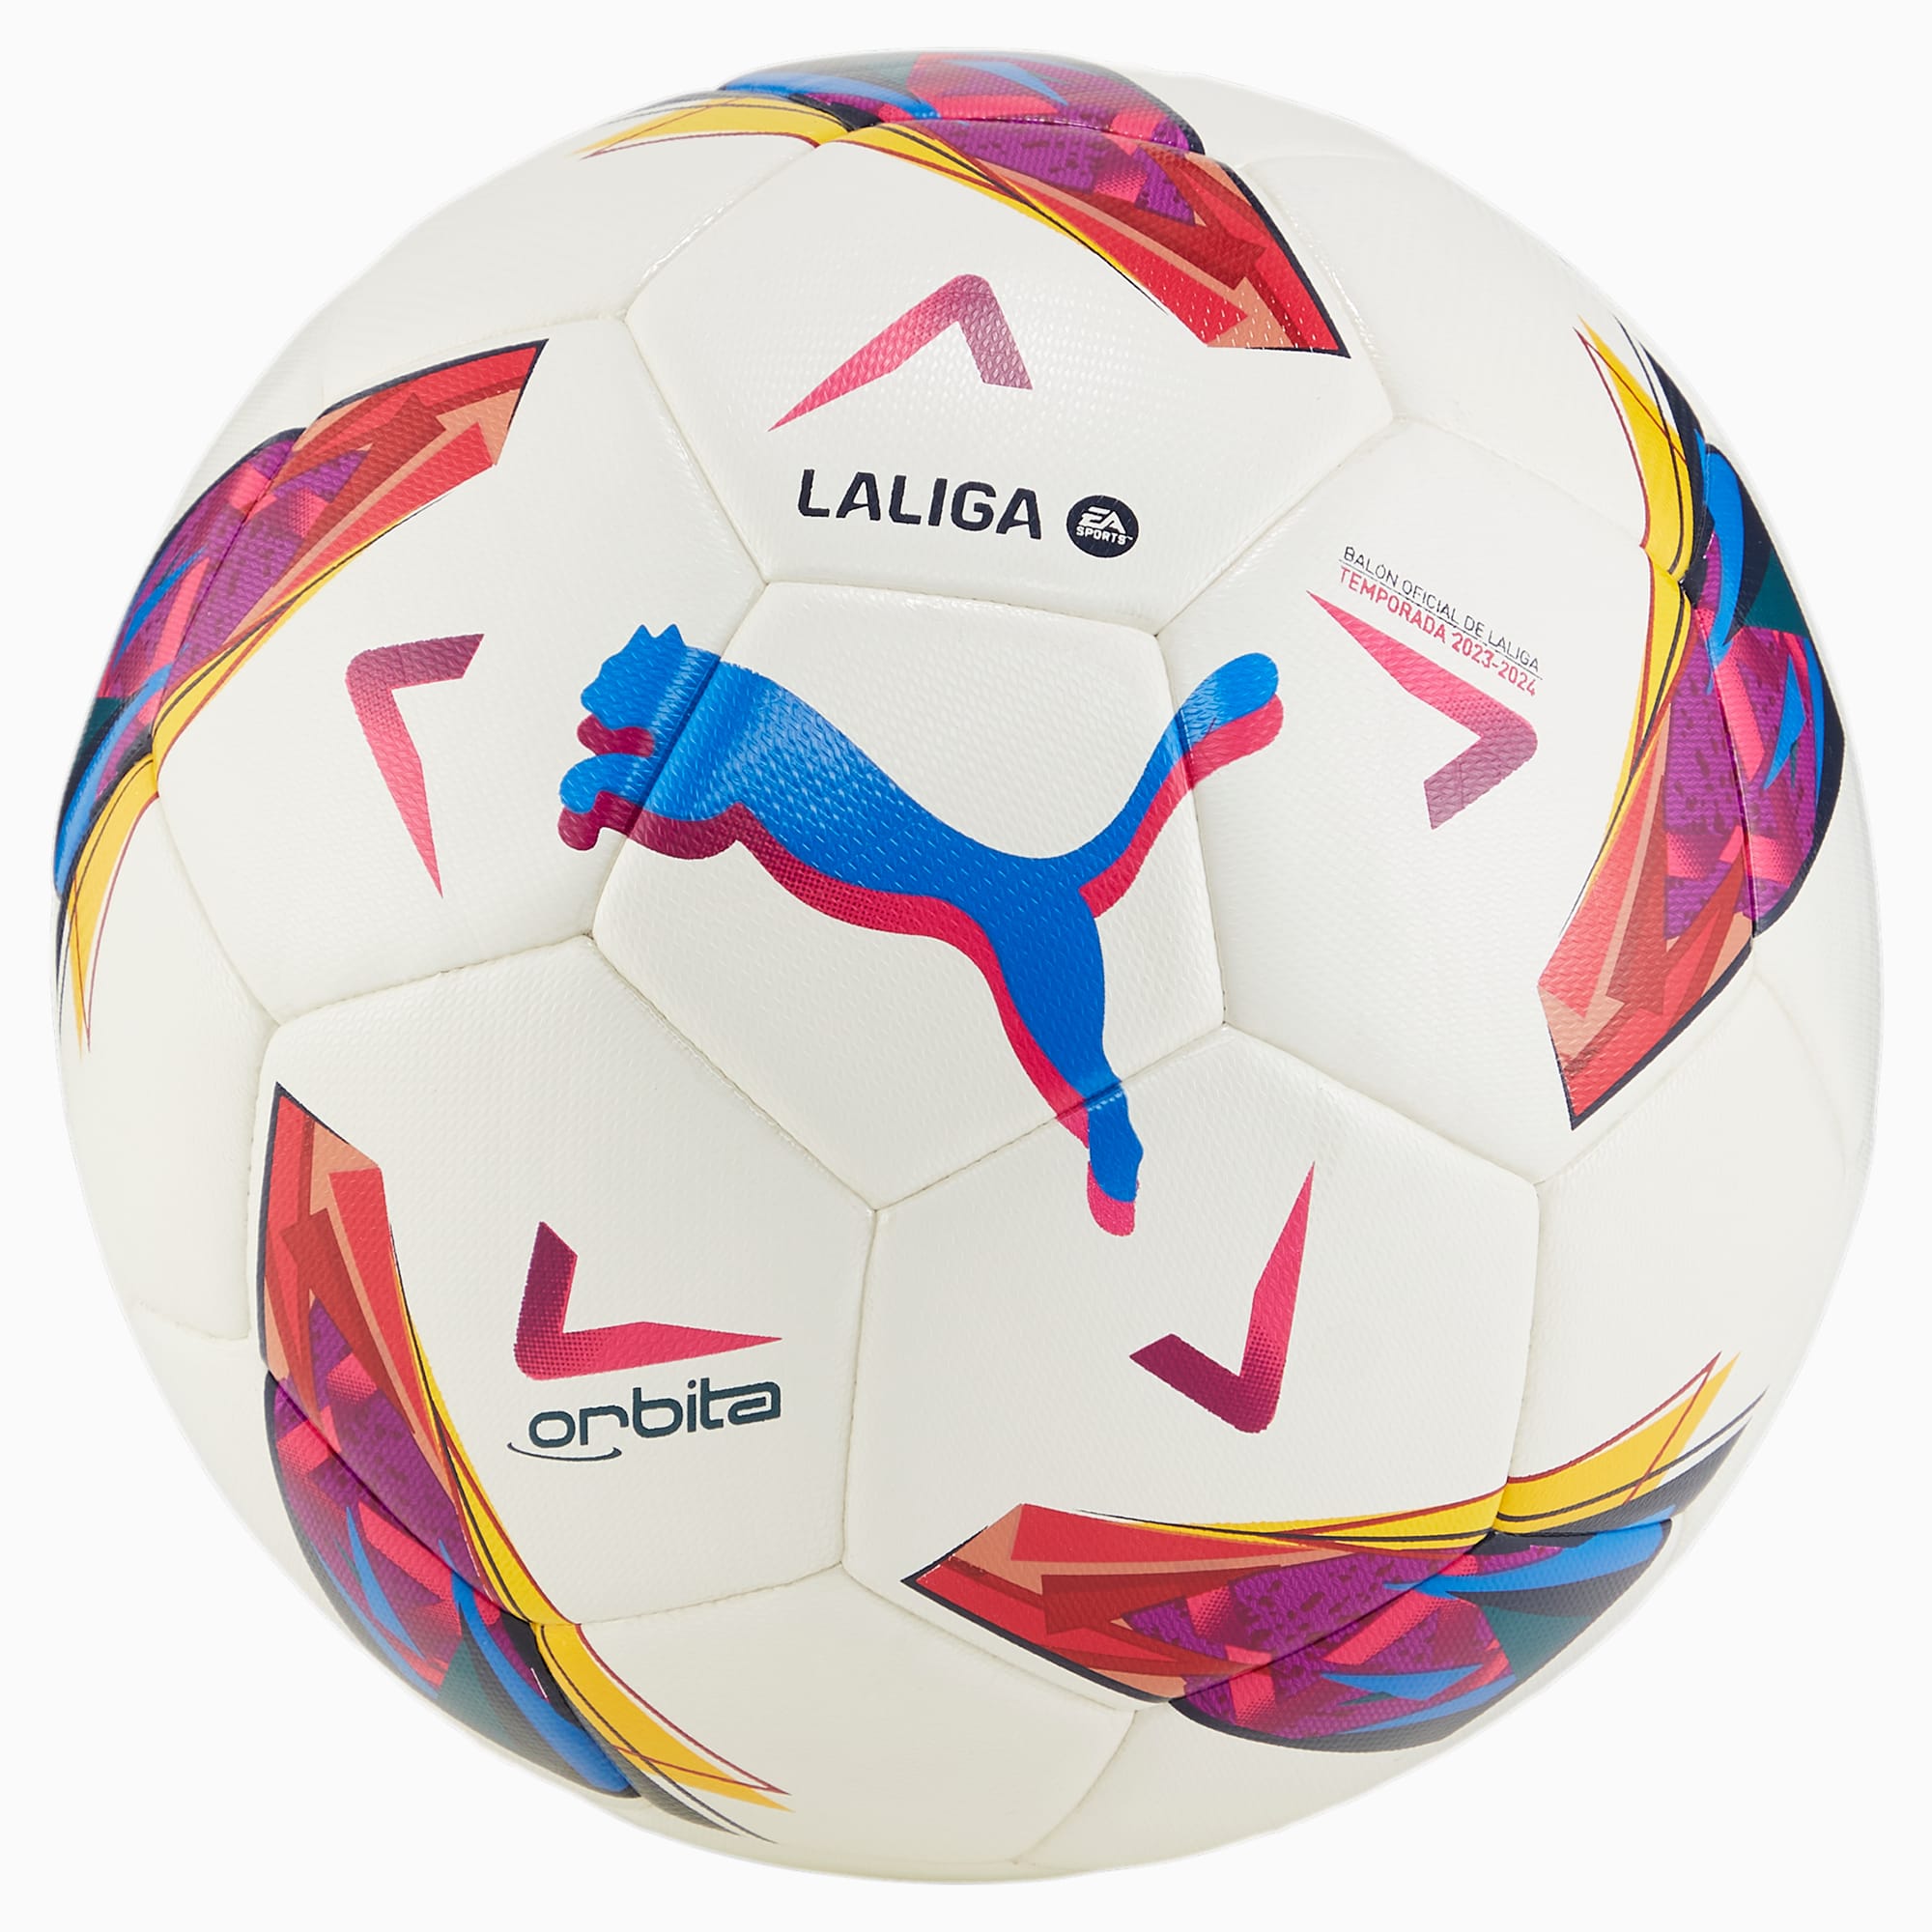 PUMA Orbita LaLiga Hybrid Trainingsfußball Für Damen, Weiß, Größe: 5, Accessoires